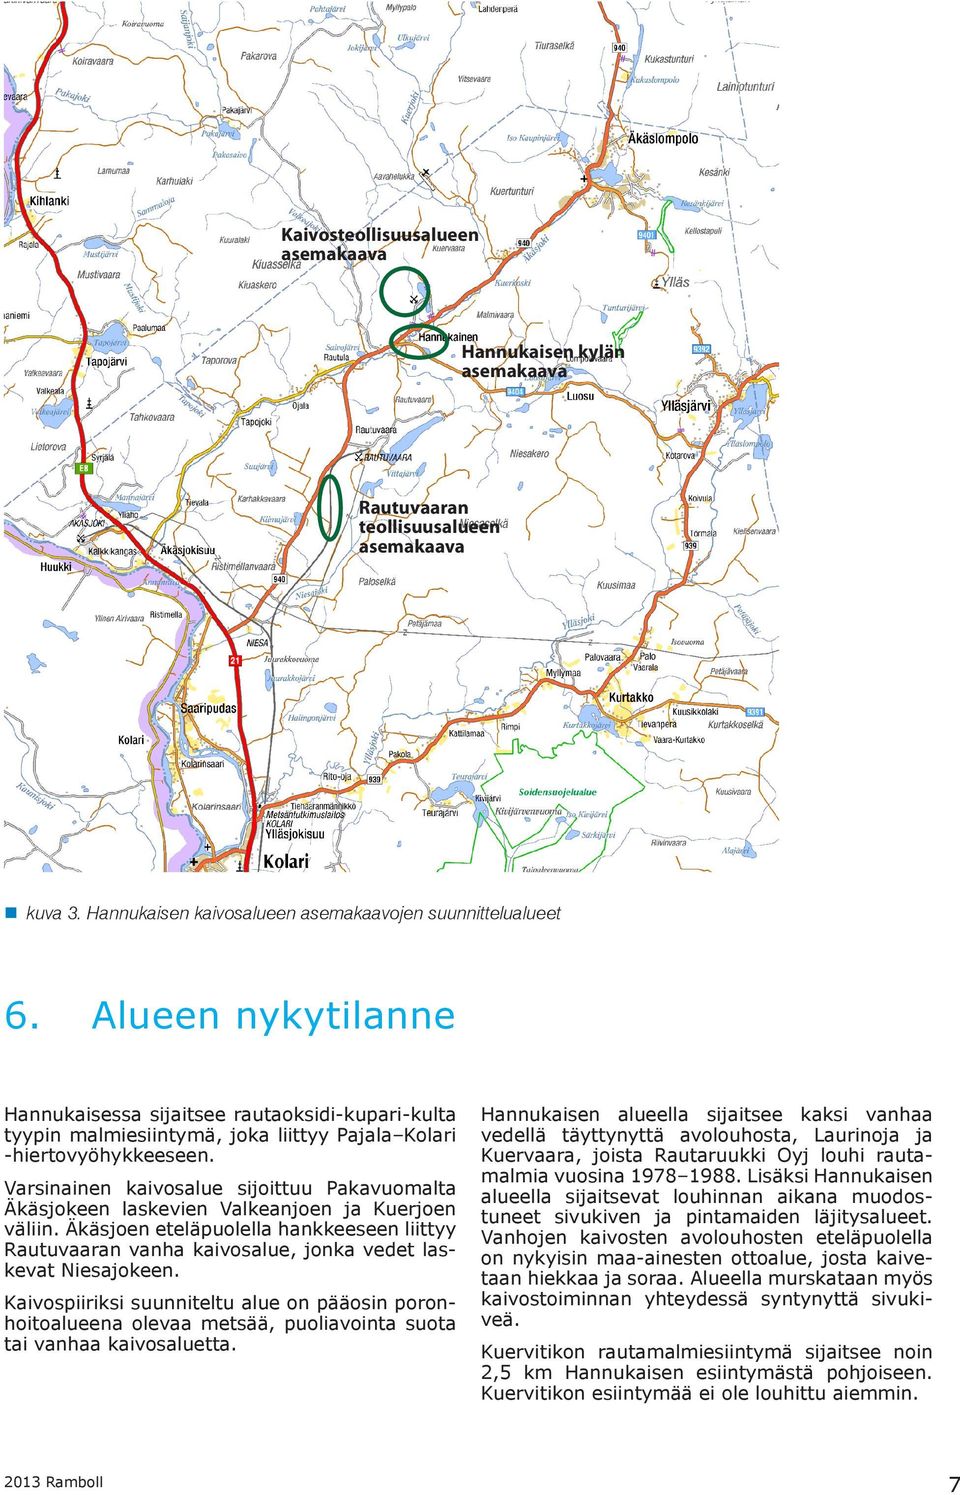 Varsinainen kaivosalue sijoittuu Pakavuomalta Äkäsjokeen laskevien Valkeanjoen ja Kuerjoen väliin.